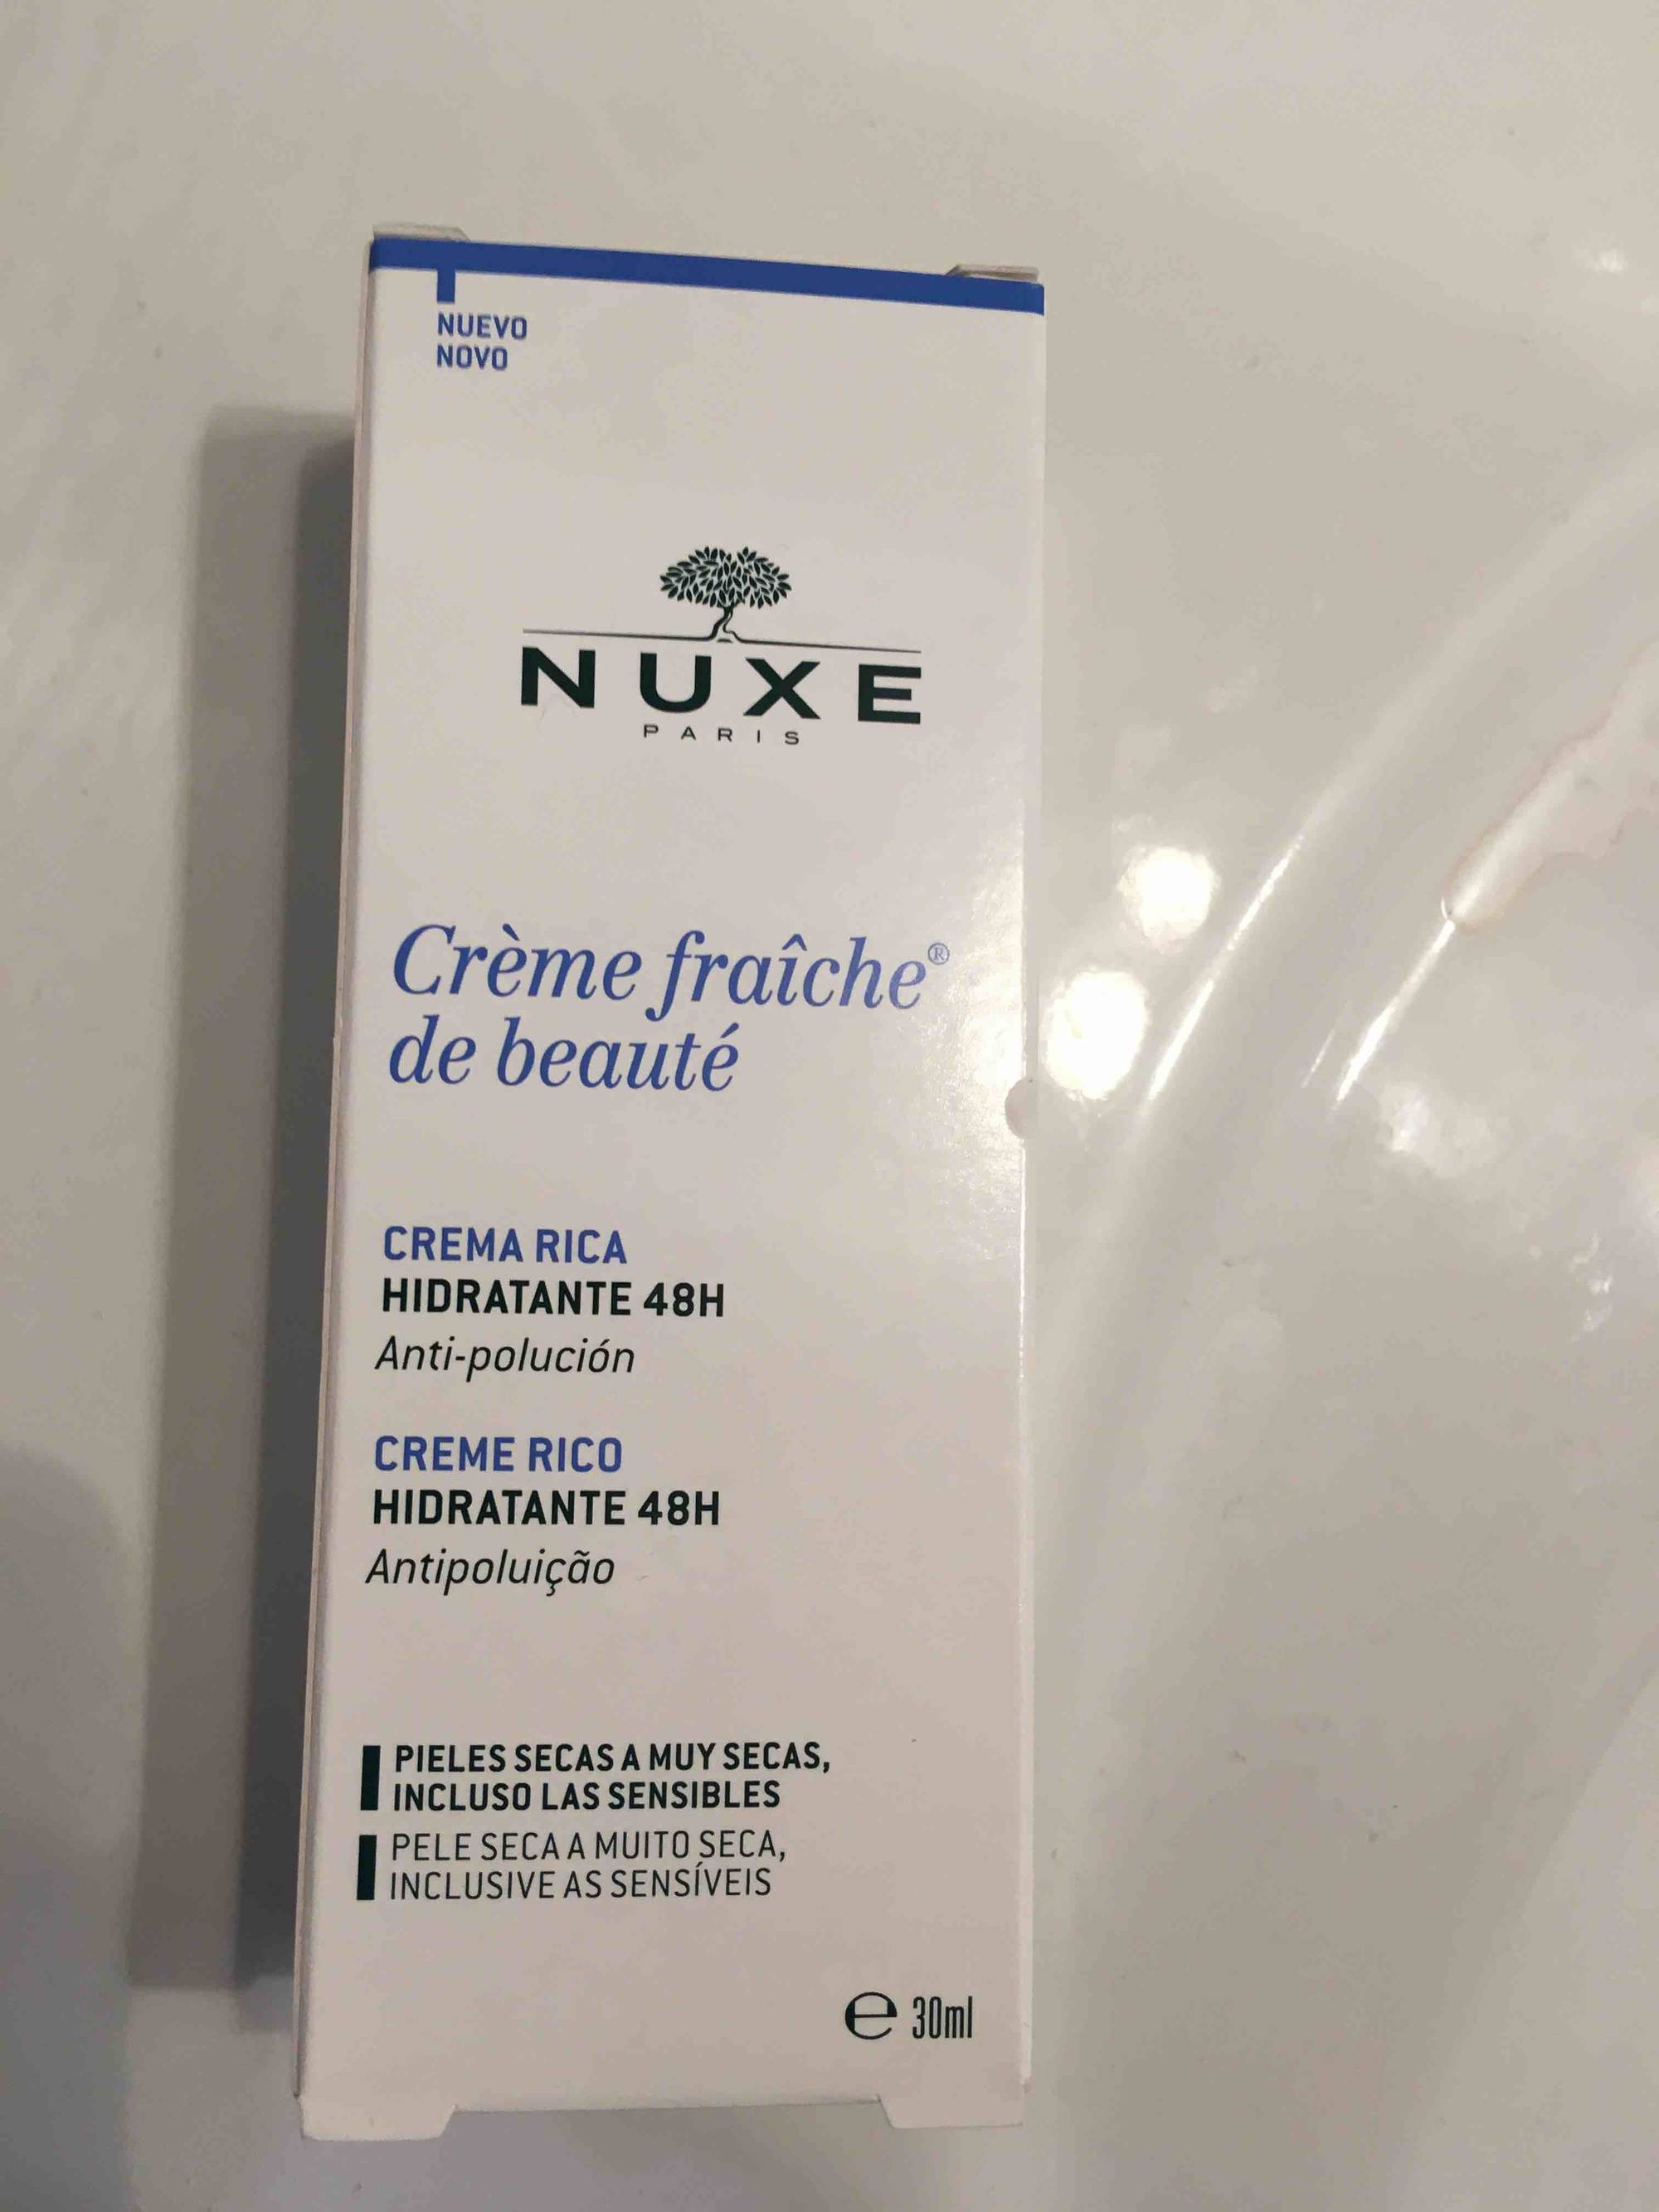 Crème fraiche de beauté de Nuxe : avis et tests - Crème et soin du